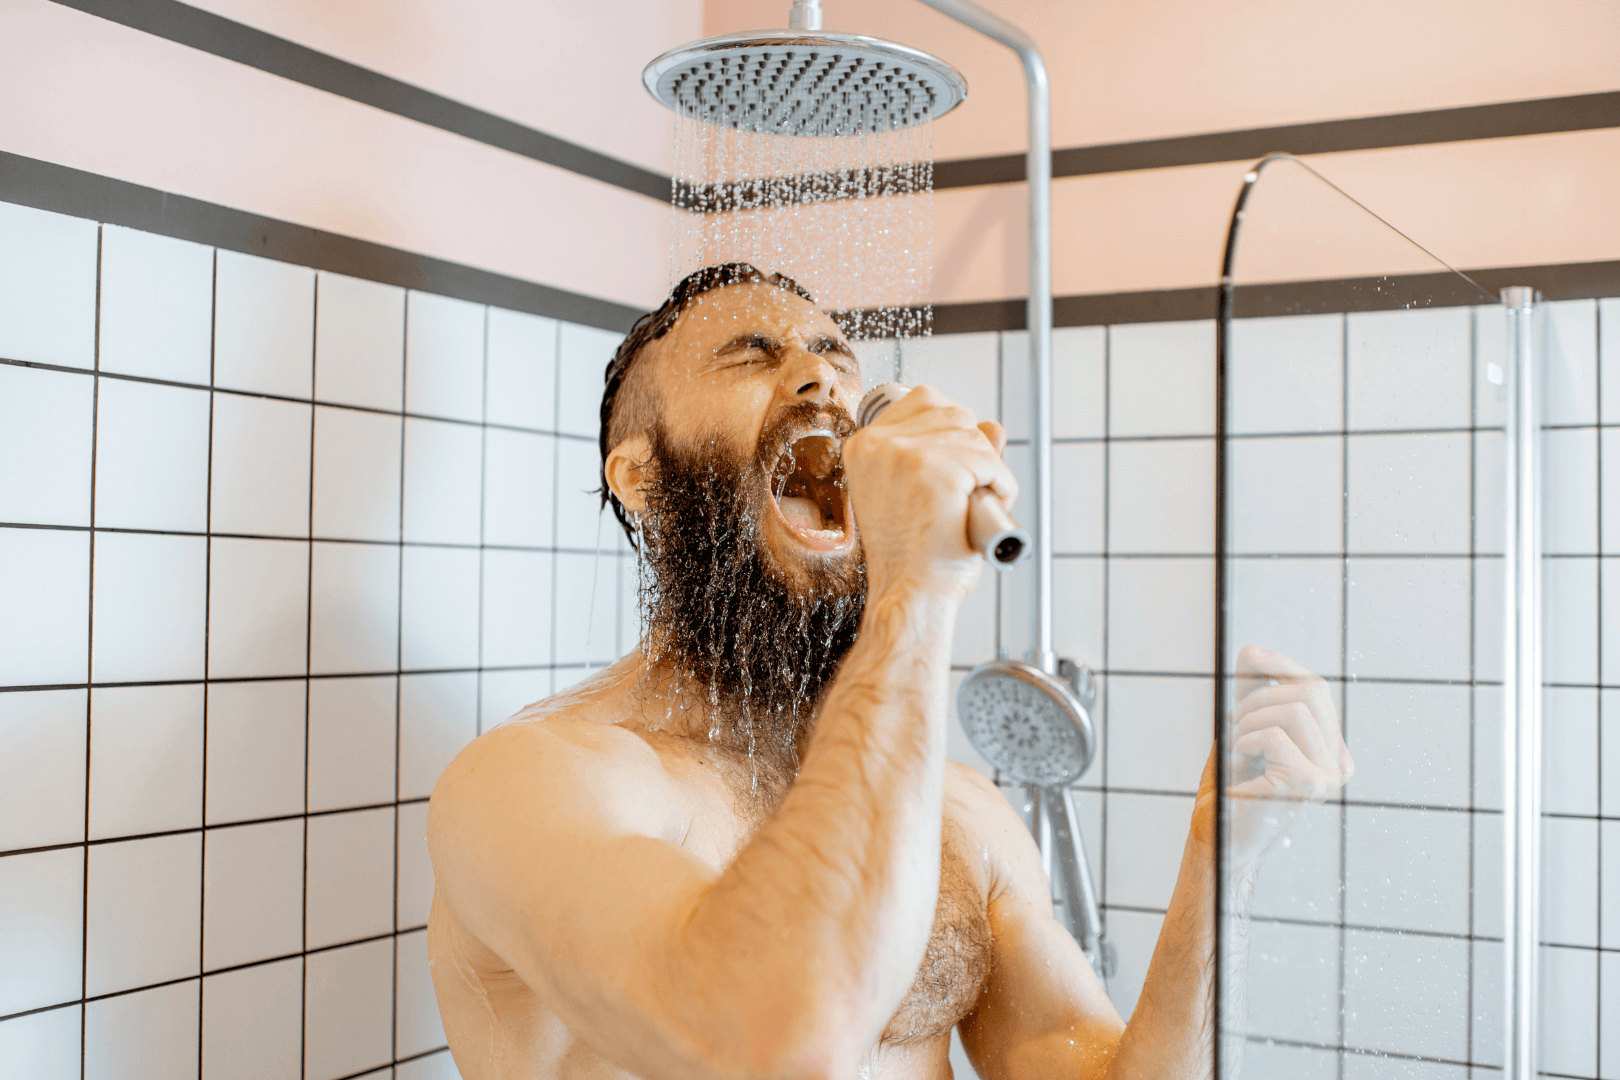 Jak często należy brać prysznic?